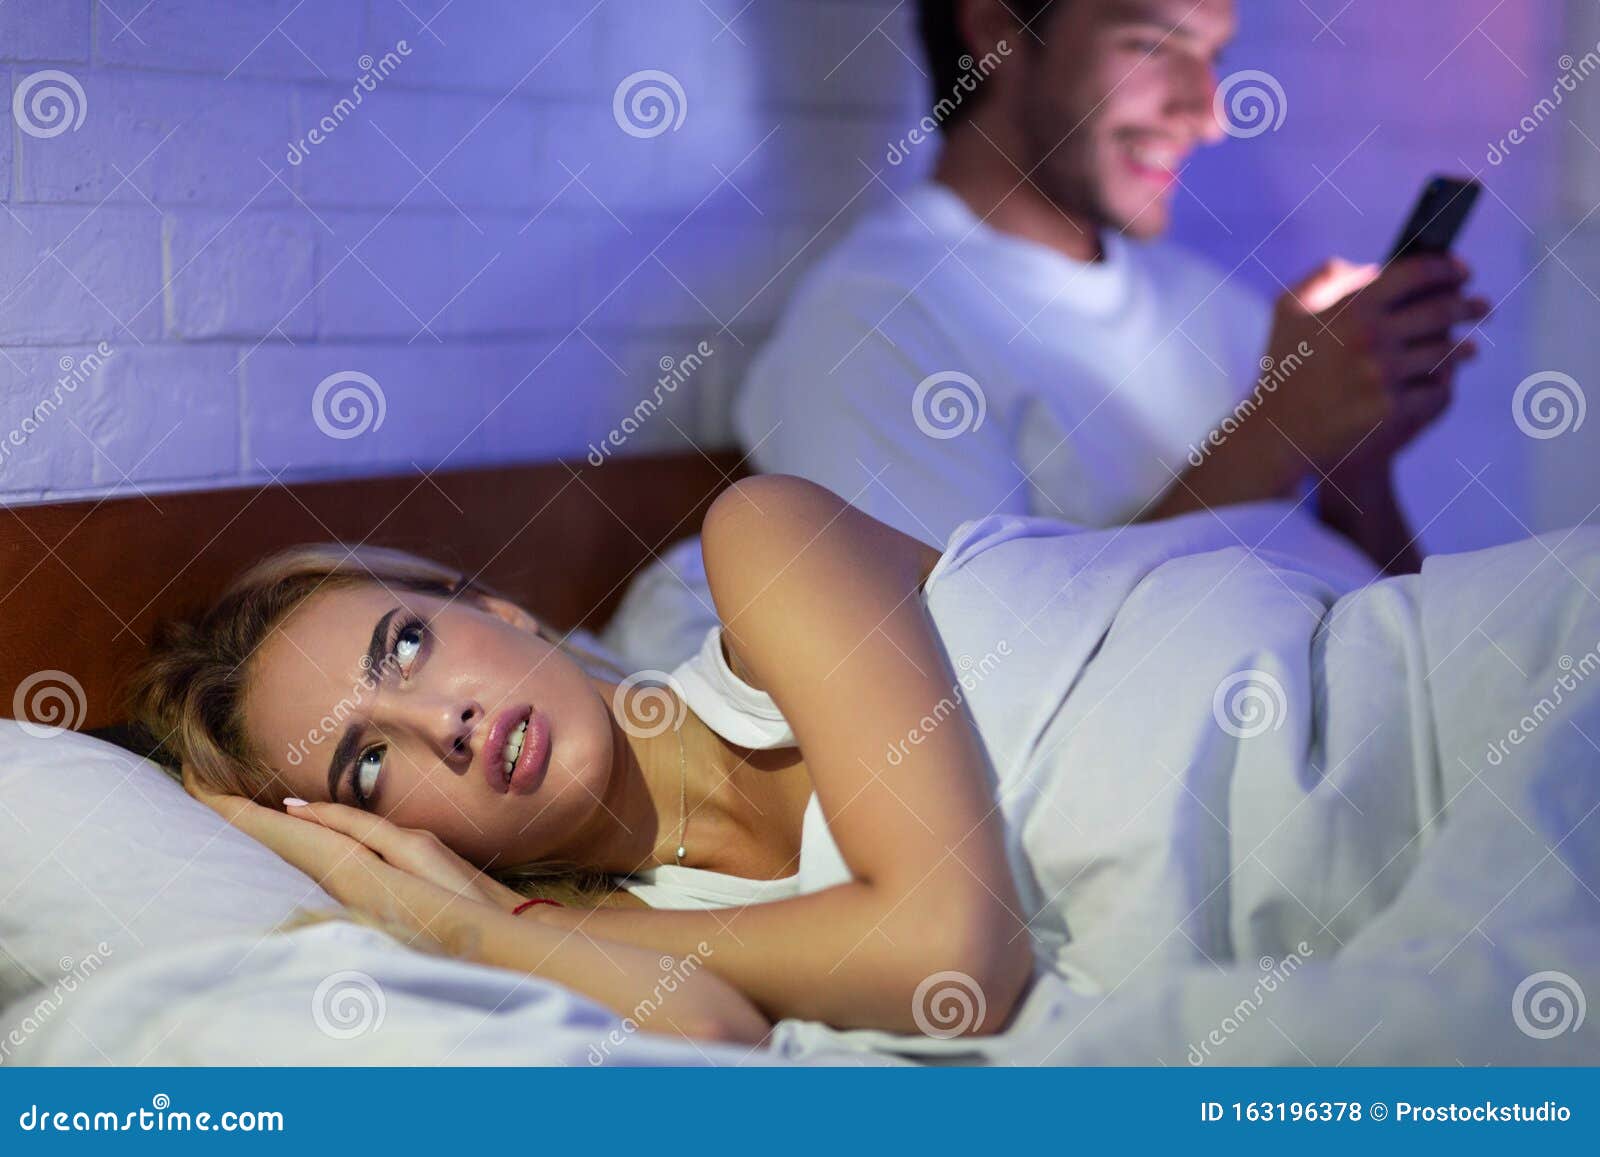 Жена измена в постели. Девушка с телефоном в кровати. Девушка лежит с телефоном. Женщина смотрит в телефон мужа.